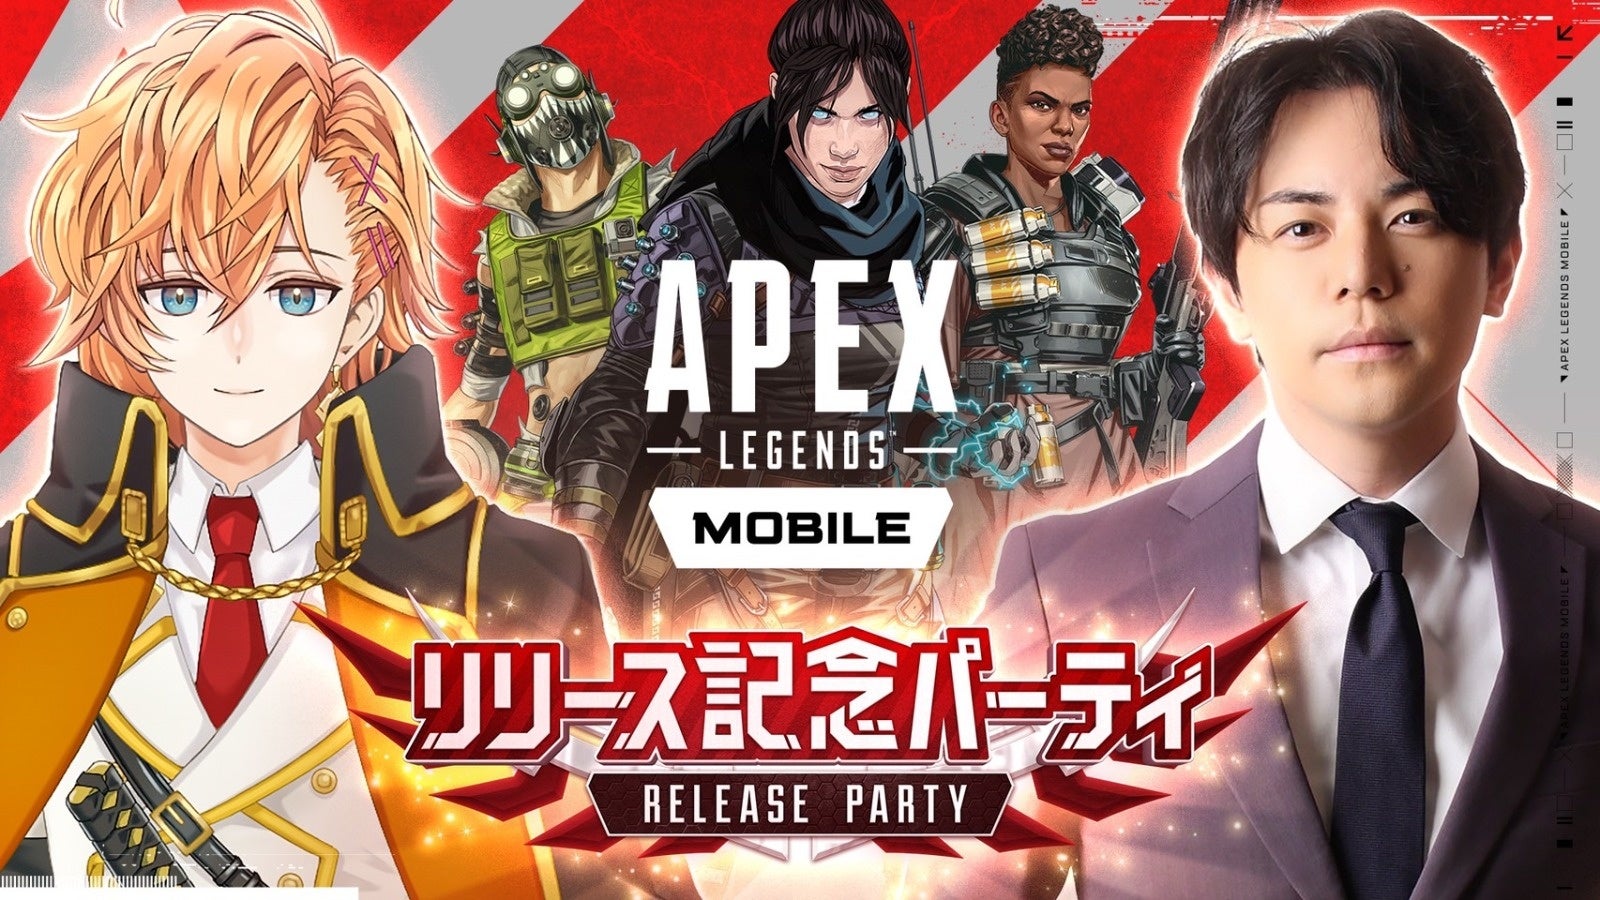 【Apexモバイル公式イベント】Apex Legends Mobileが待望の国内リリースを開始。リリースを記念して、運営会社であるElectronic Artsと公式初のモバイルイベントを開催決定！